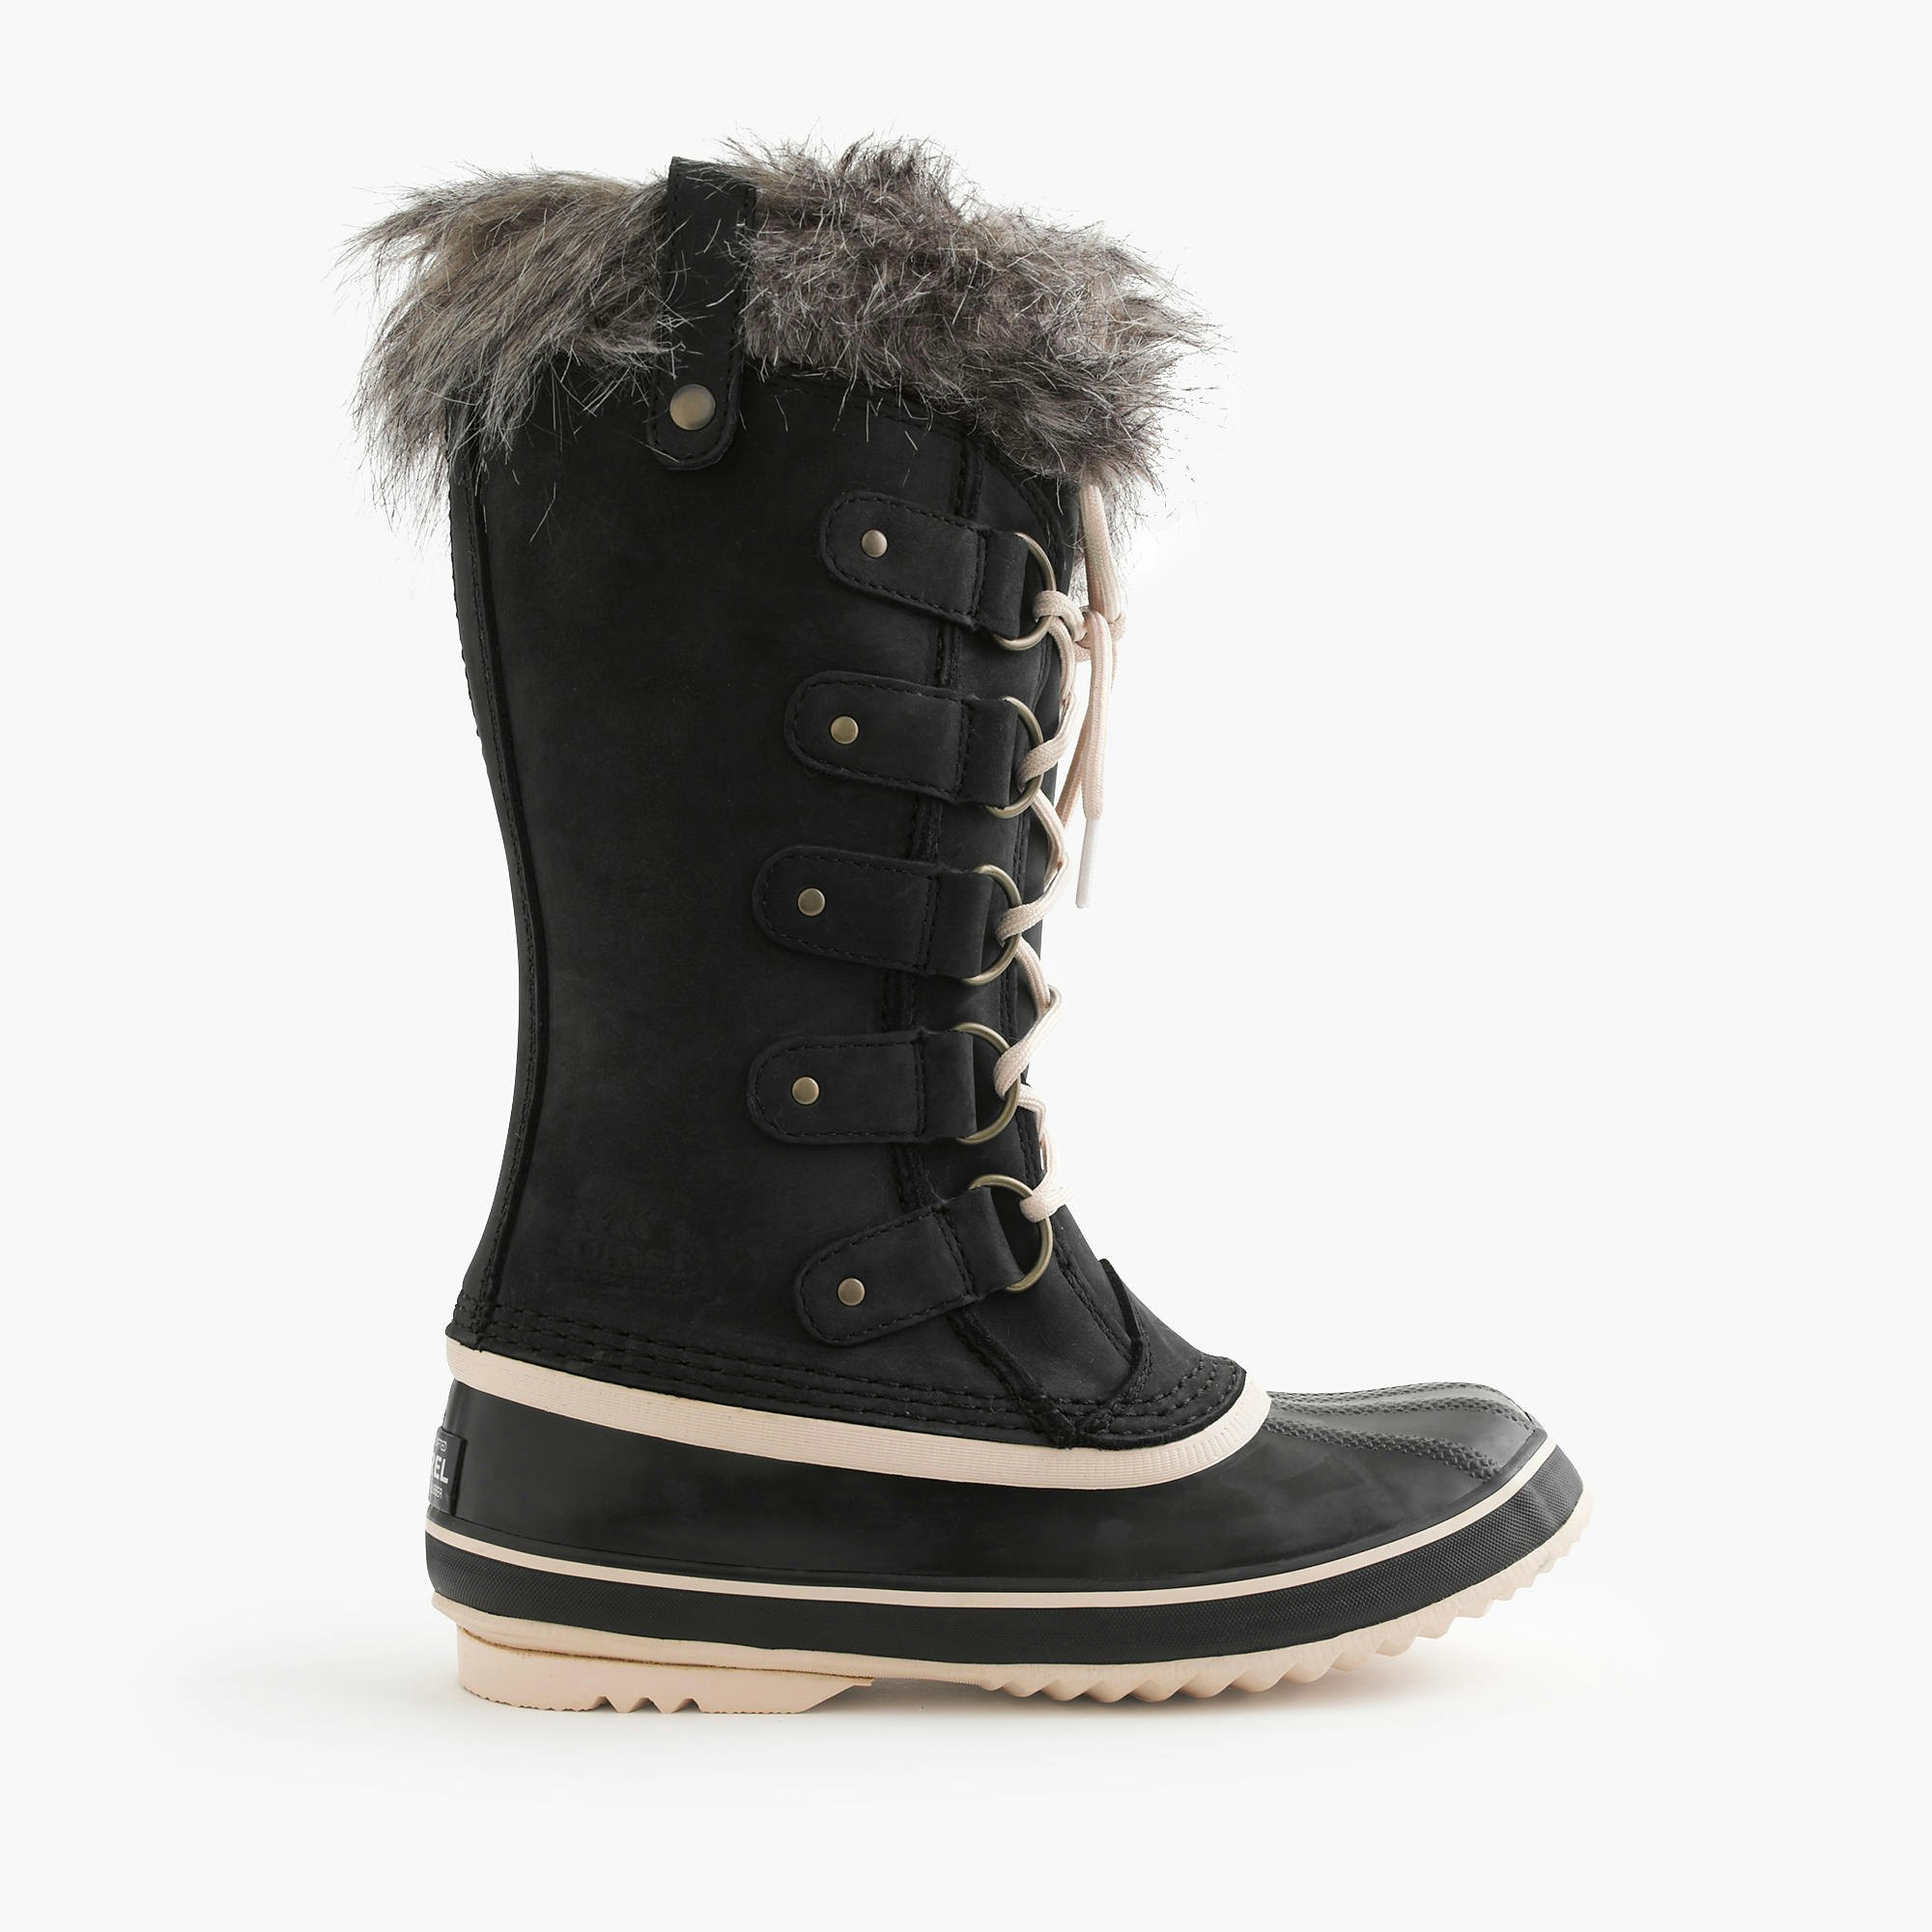 sorrells snow boots